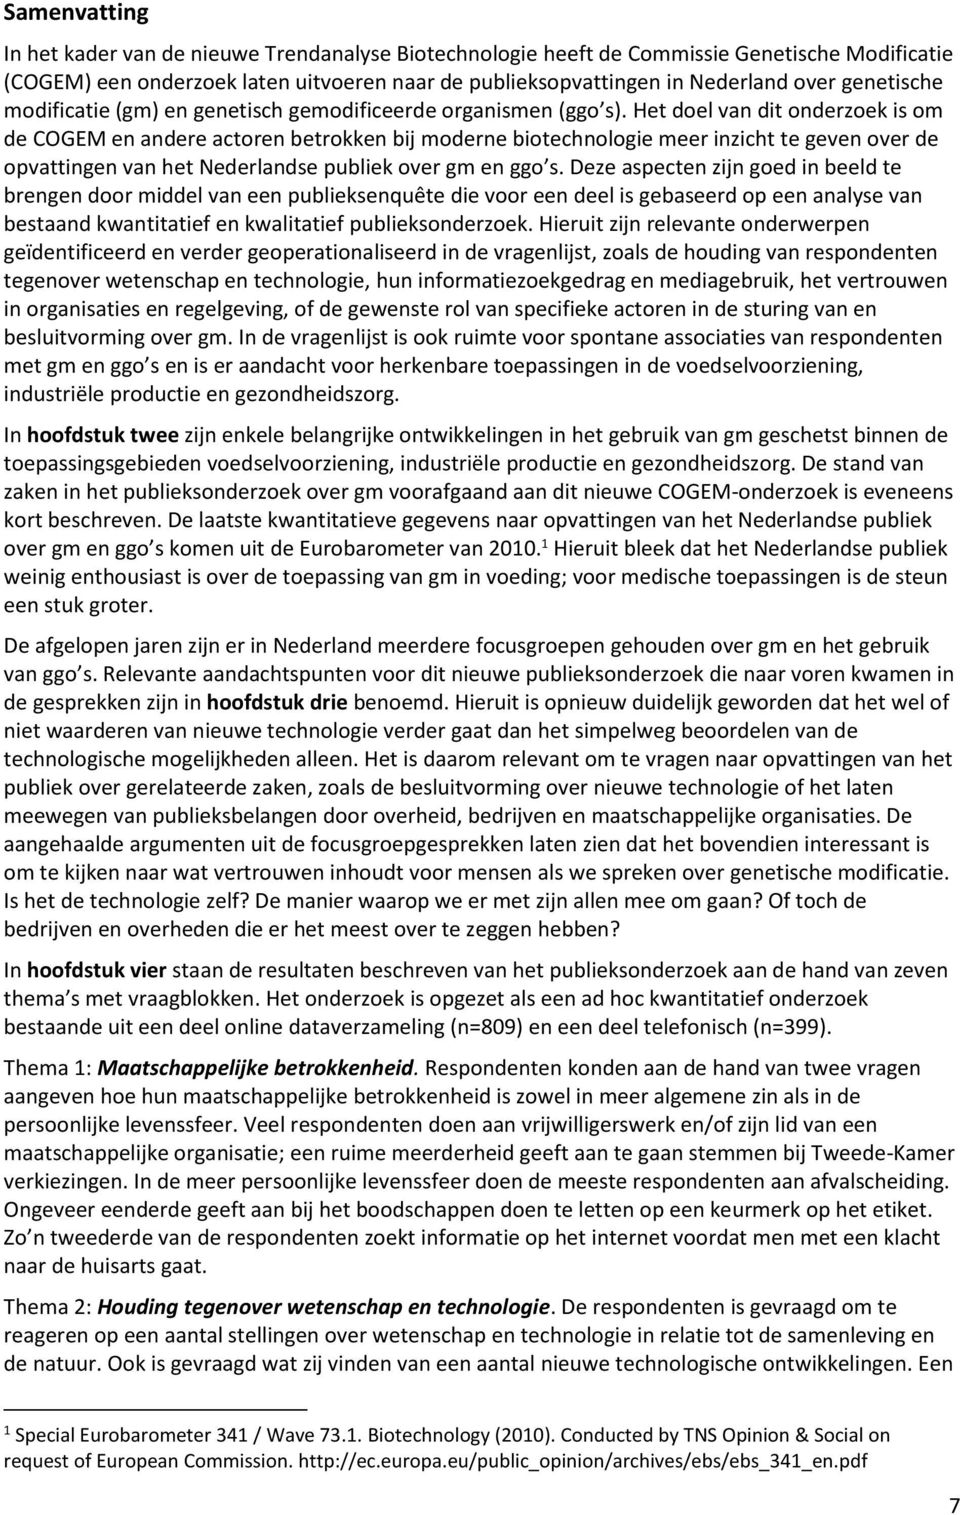 Het doel van dit onderzoek is om de COGEM en andere actoren betrokken bij moderne biotechnologie meer inzicht te geven over de opvattingen van het Nederlandse publiek over gm en ggo s.